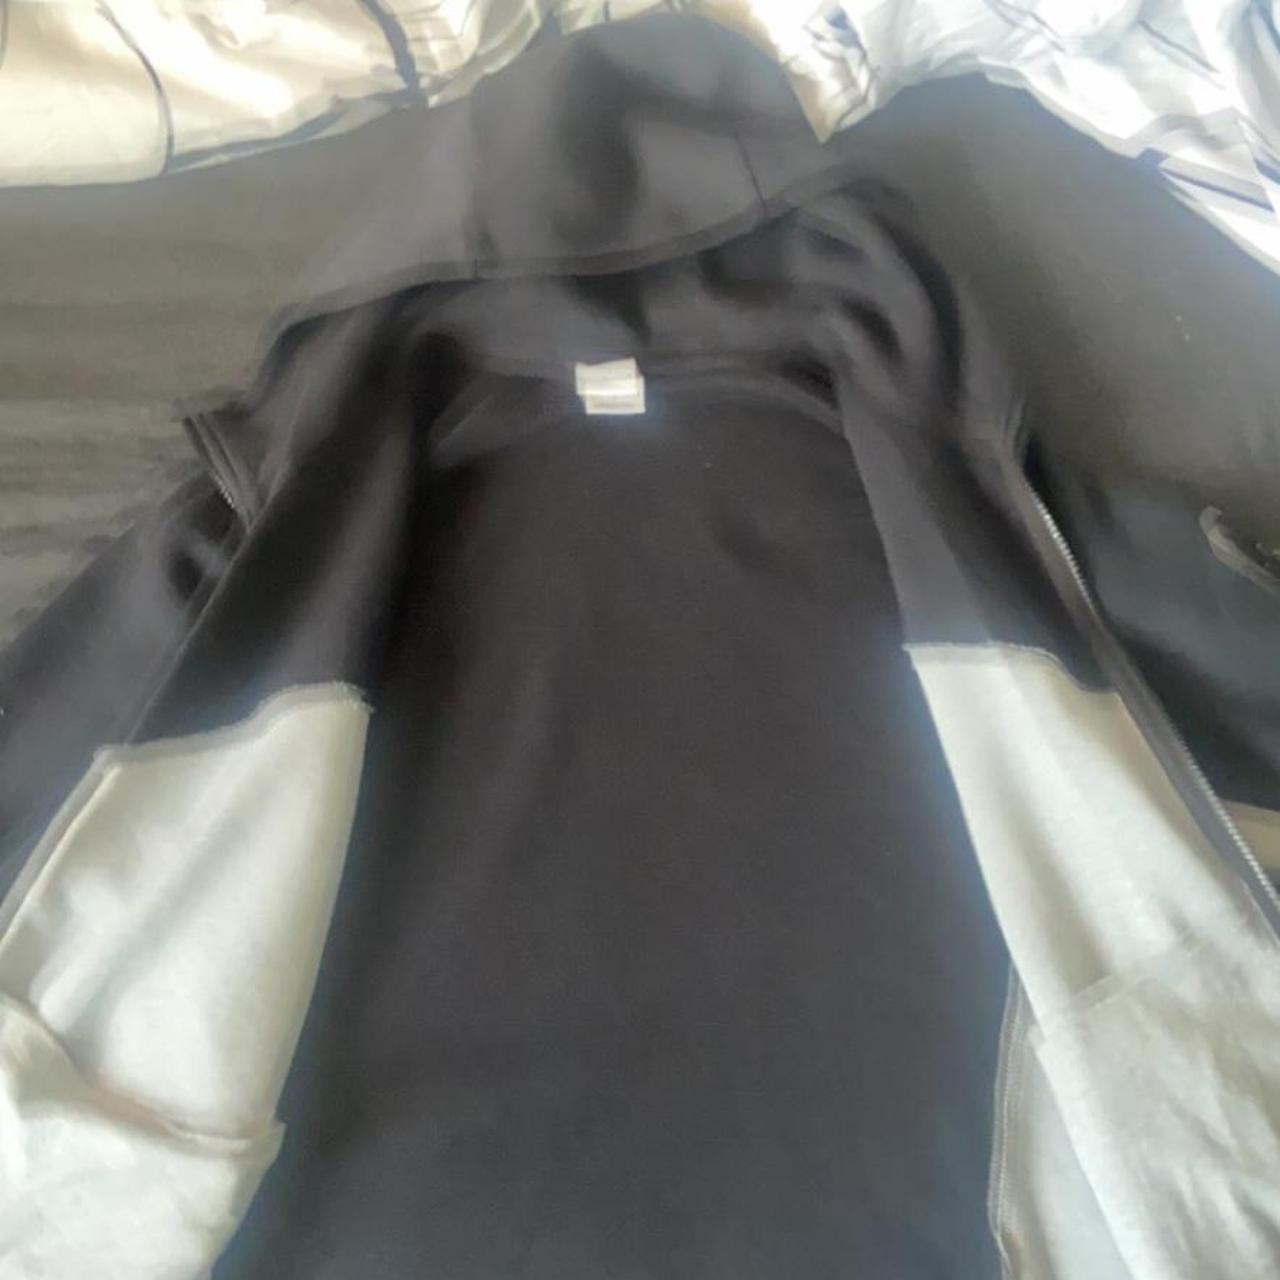 Nike tech fleece hoodie grey & black large #nike... - Depop